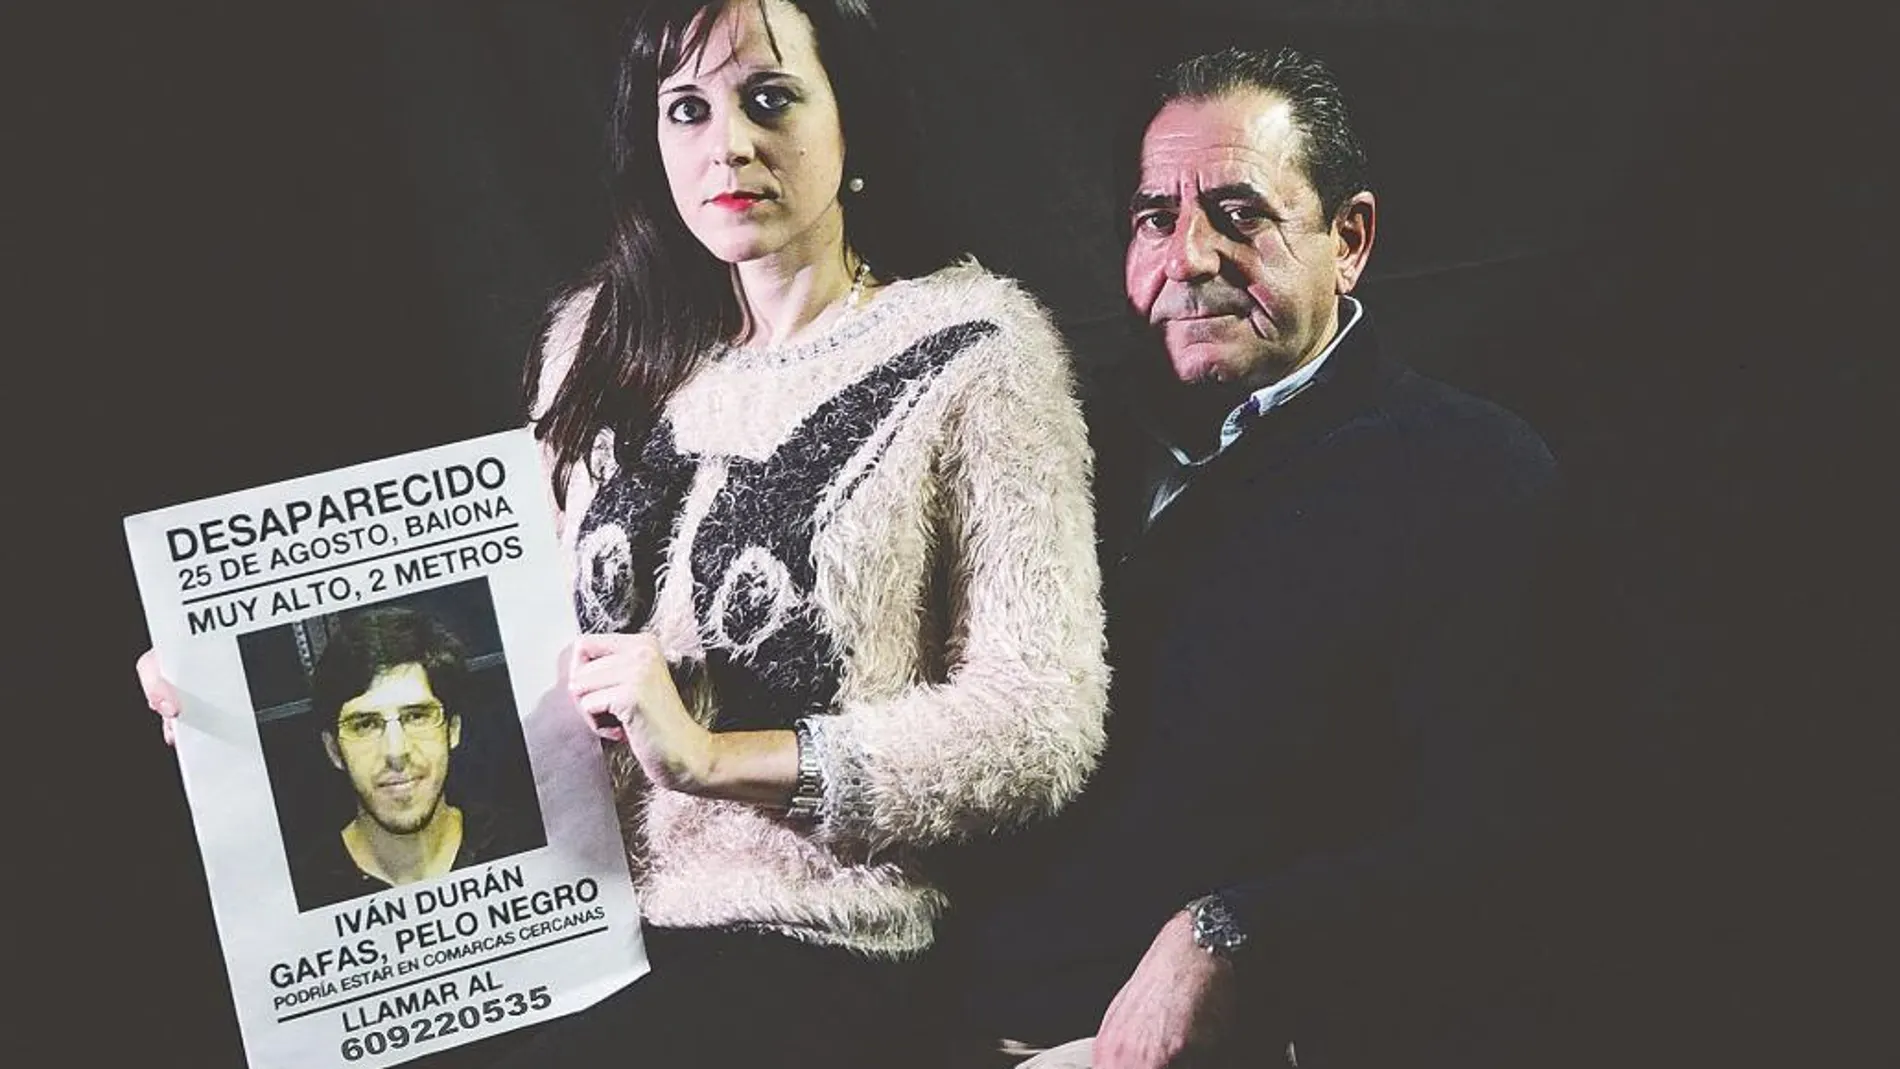 La familia, desolada. Juan –el padre de Iván Durán– y su hermana Yudith, con el cartel de alerta por la desaparición del joven